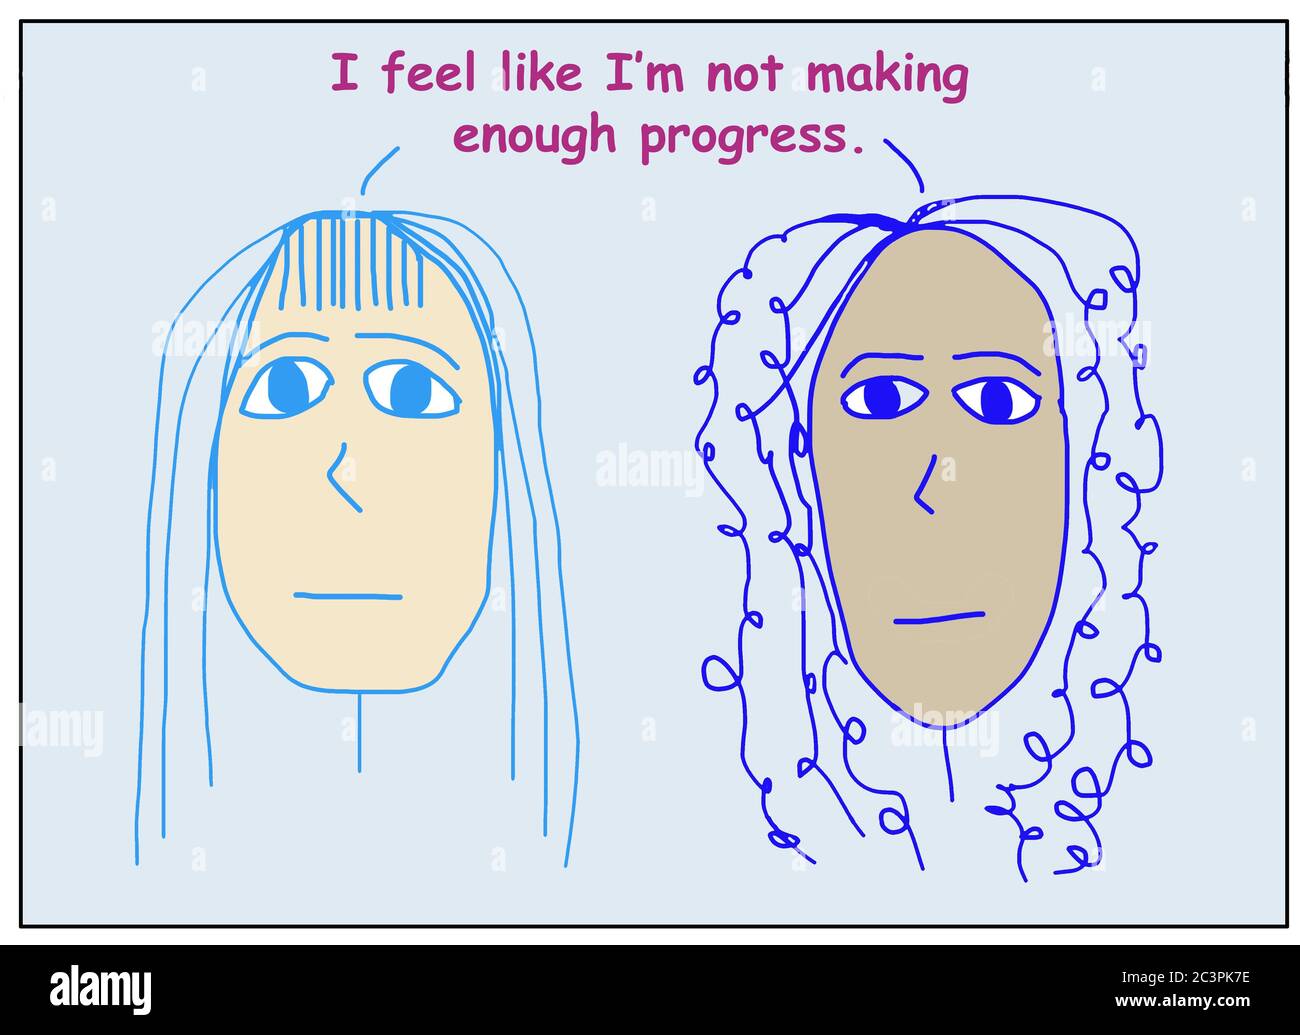 Dibujos animados de color de dos mujeres preocupadas, étnicamente diversas srtating siento que no estoy haciendo suficiente progreso. Foto de stock